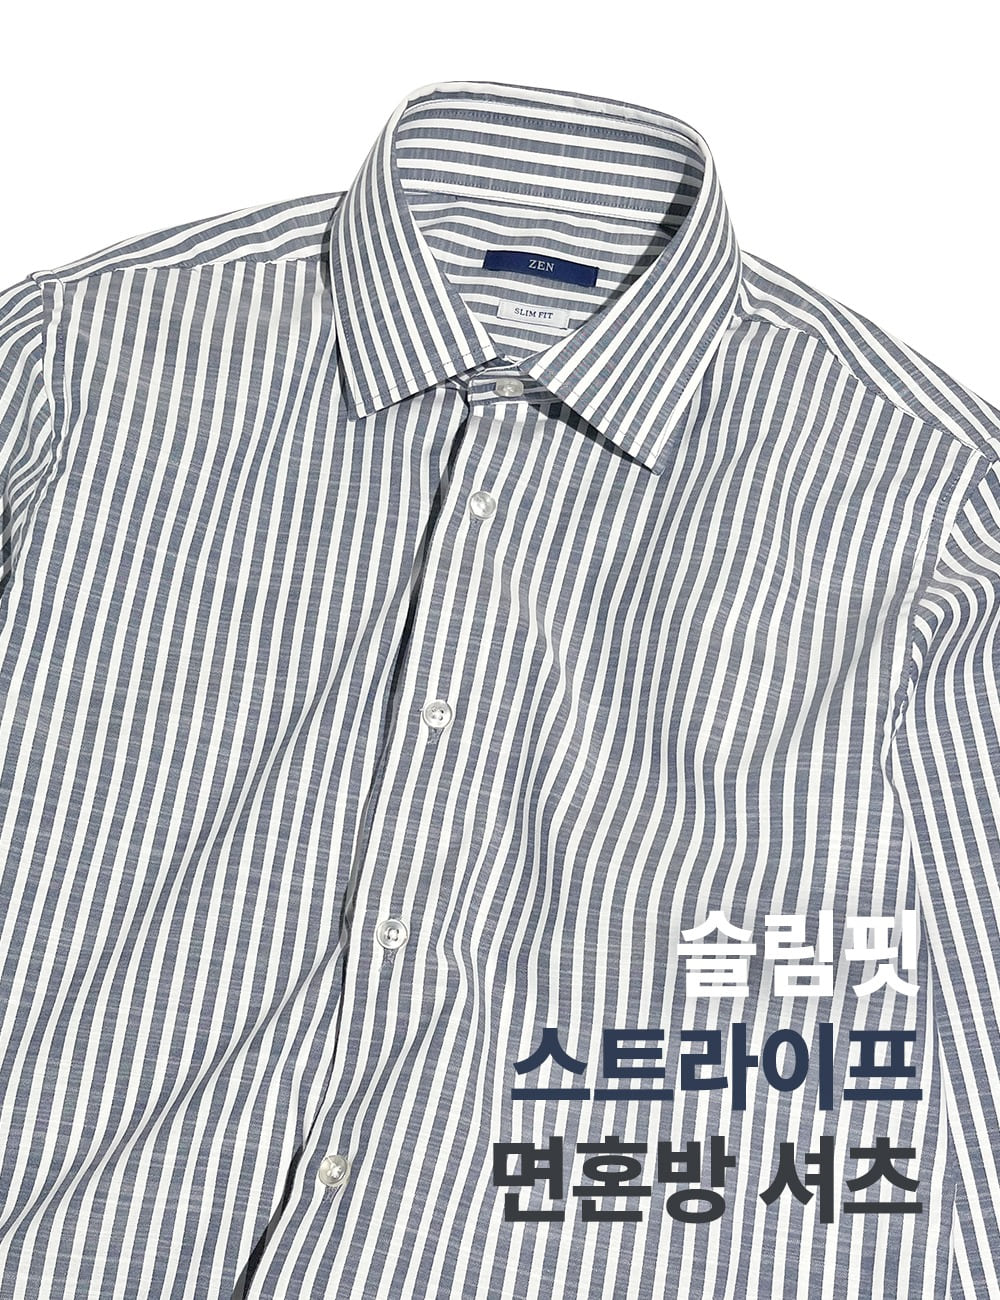 ZEN 슬림핏 스트라이프 면혼방 셔츠